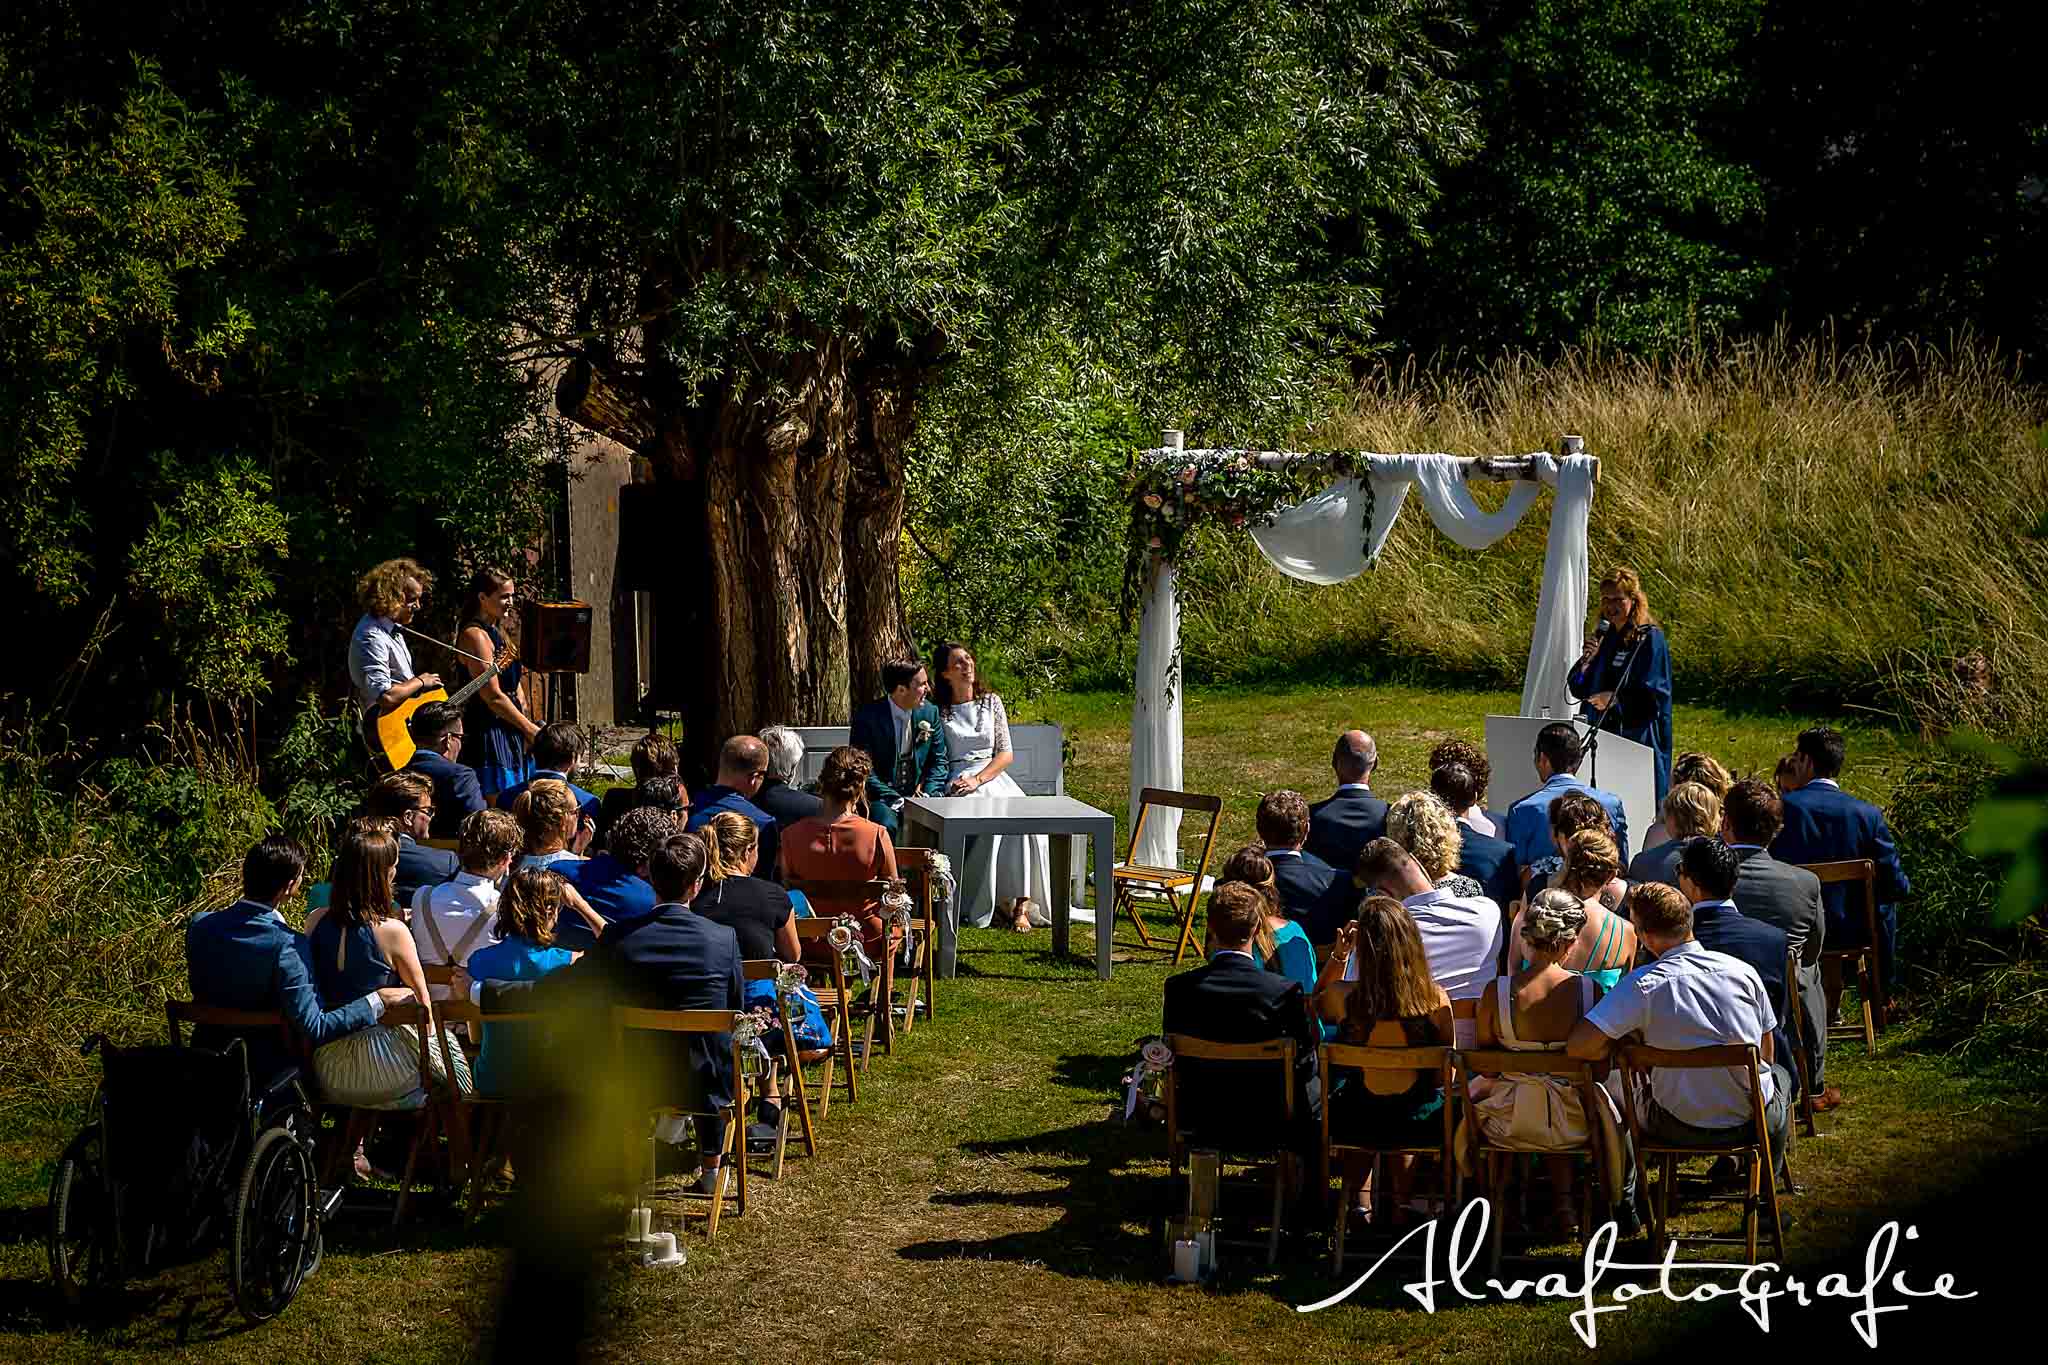 Bruiloft Maren en Tim Alvafotografie ceremoniesetting met gasten